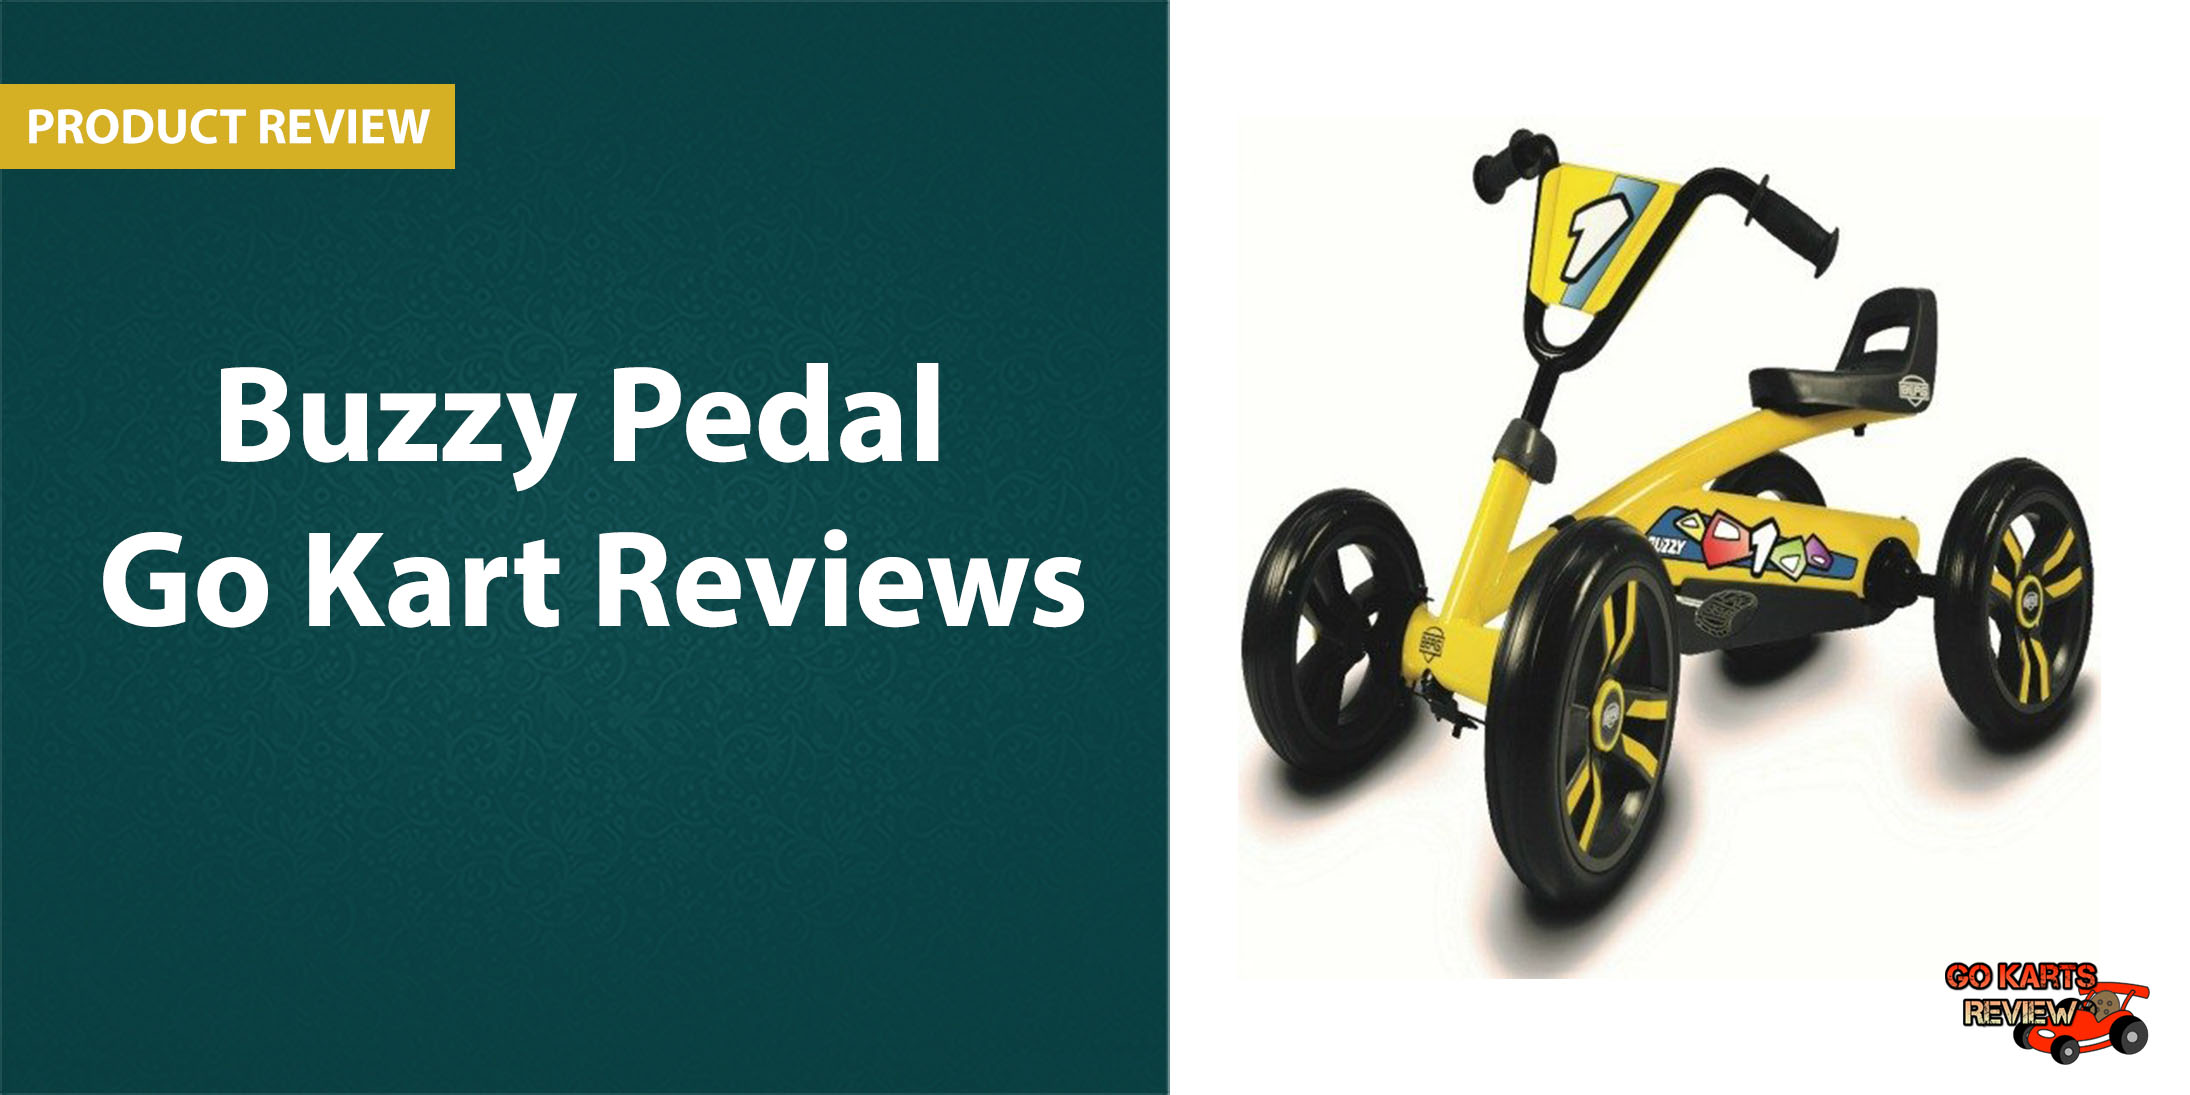 Pedal Go Kart Reviews